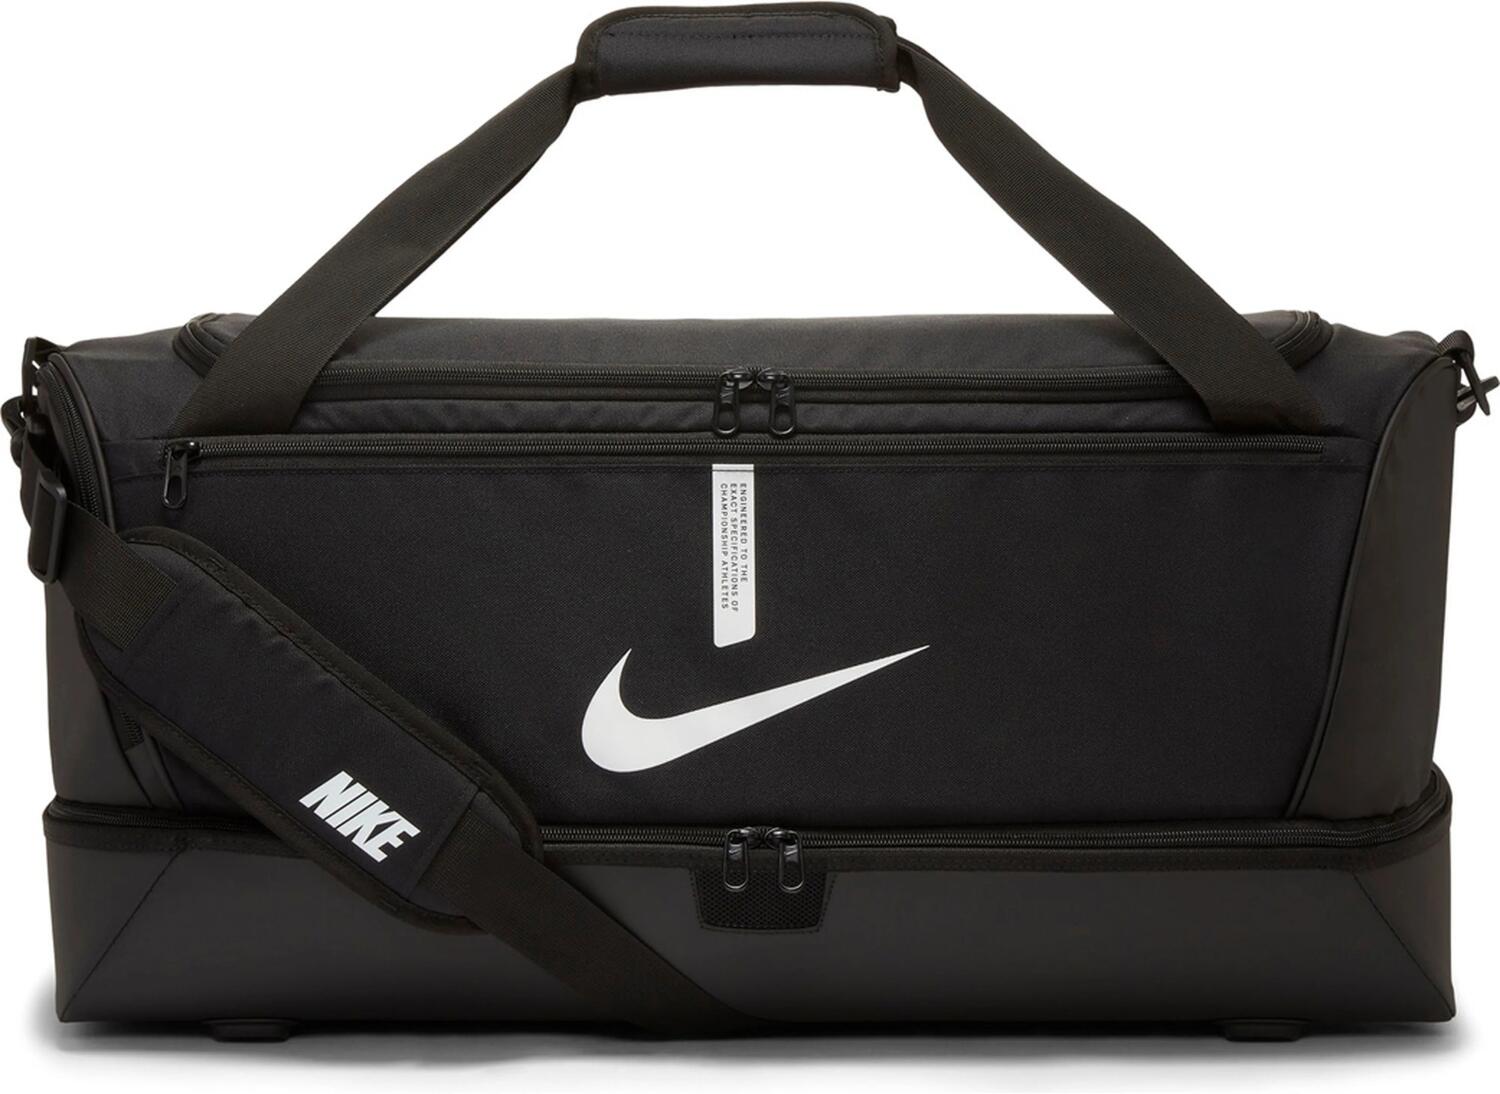 Nike Academy Team Soccer Hardcase Tasche L (010 black/black/white)